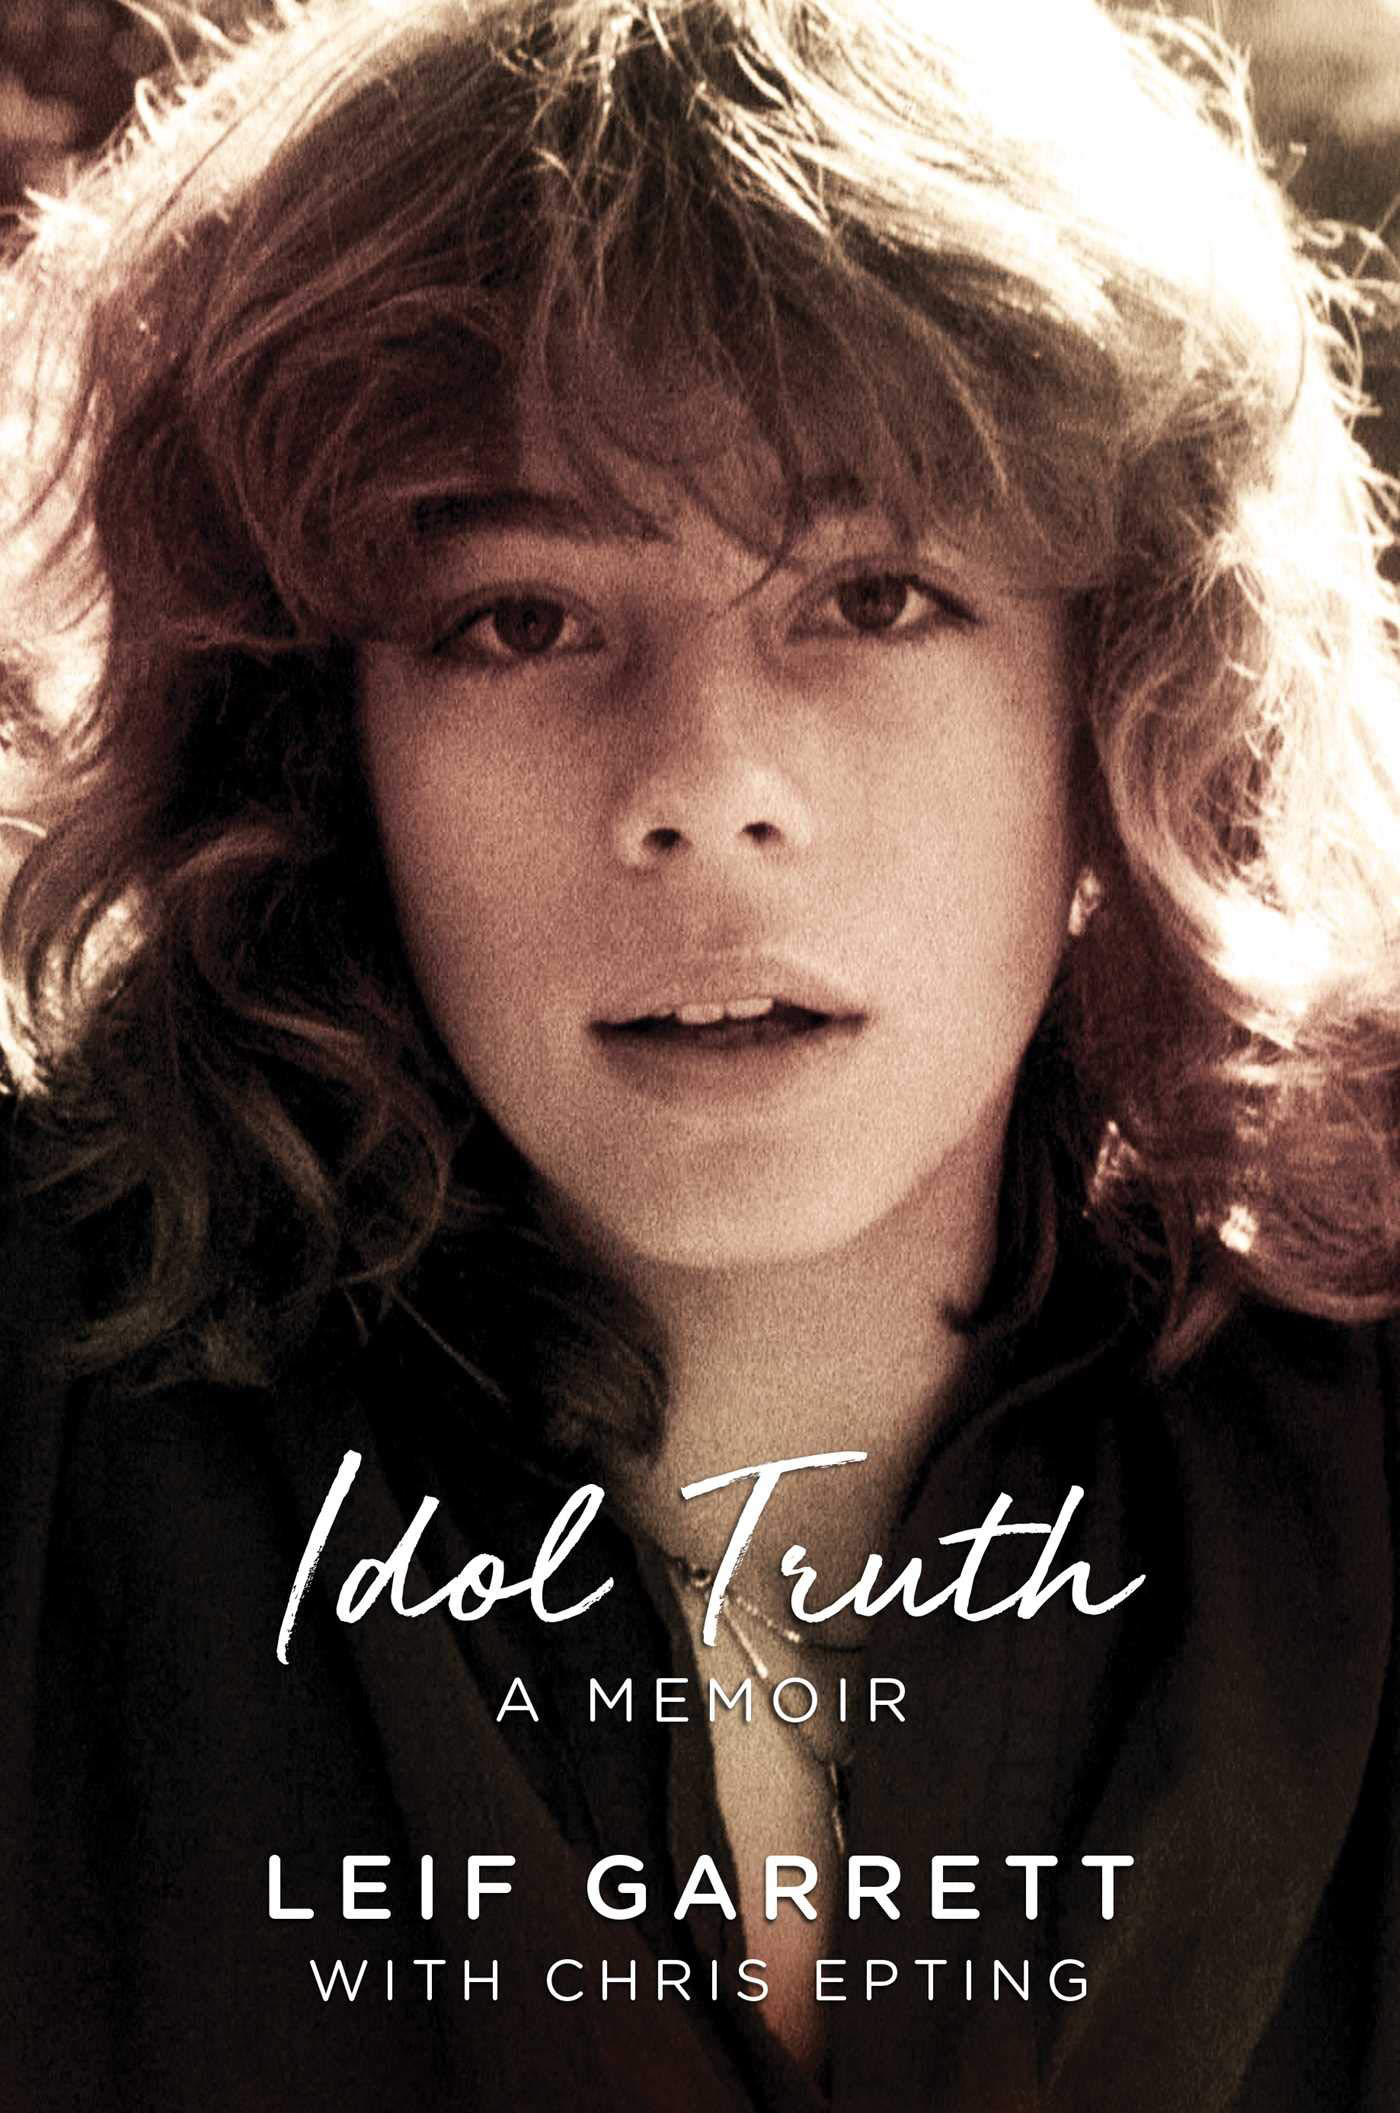 Leif Garrett - 'Idol Truth'